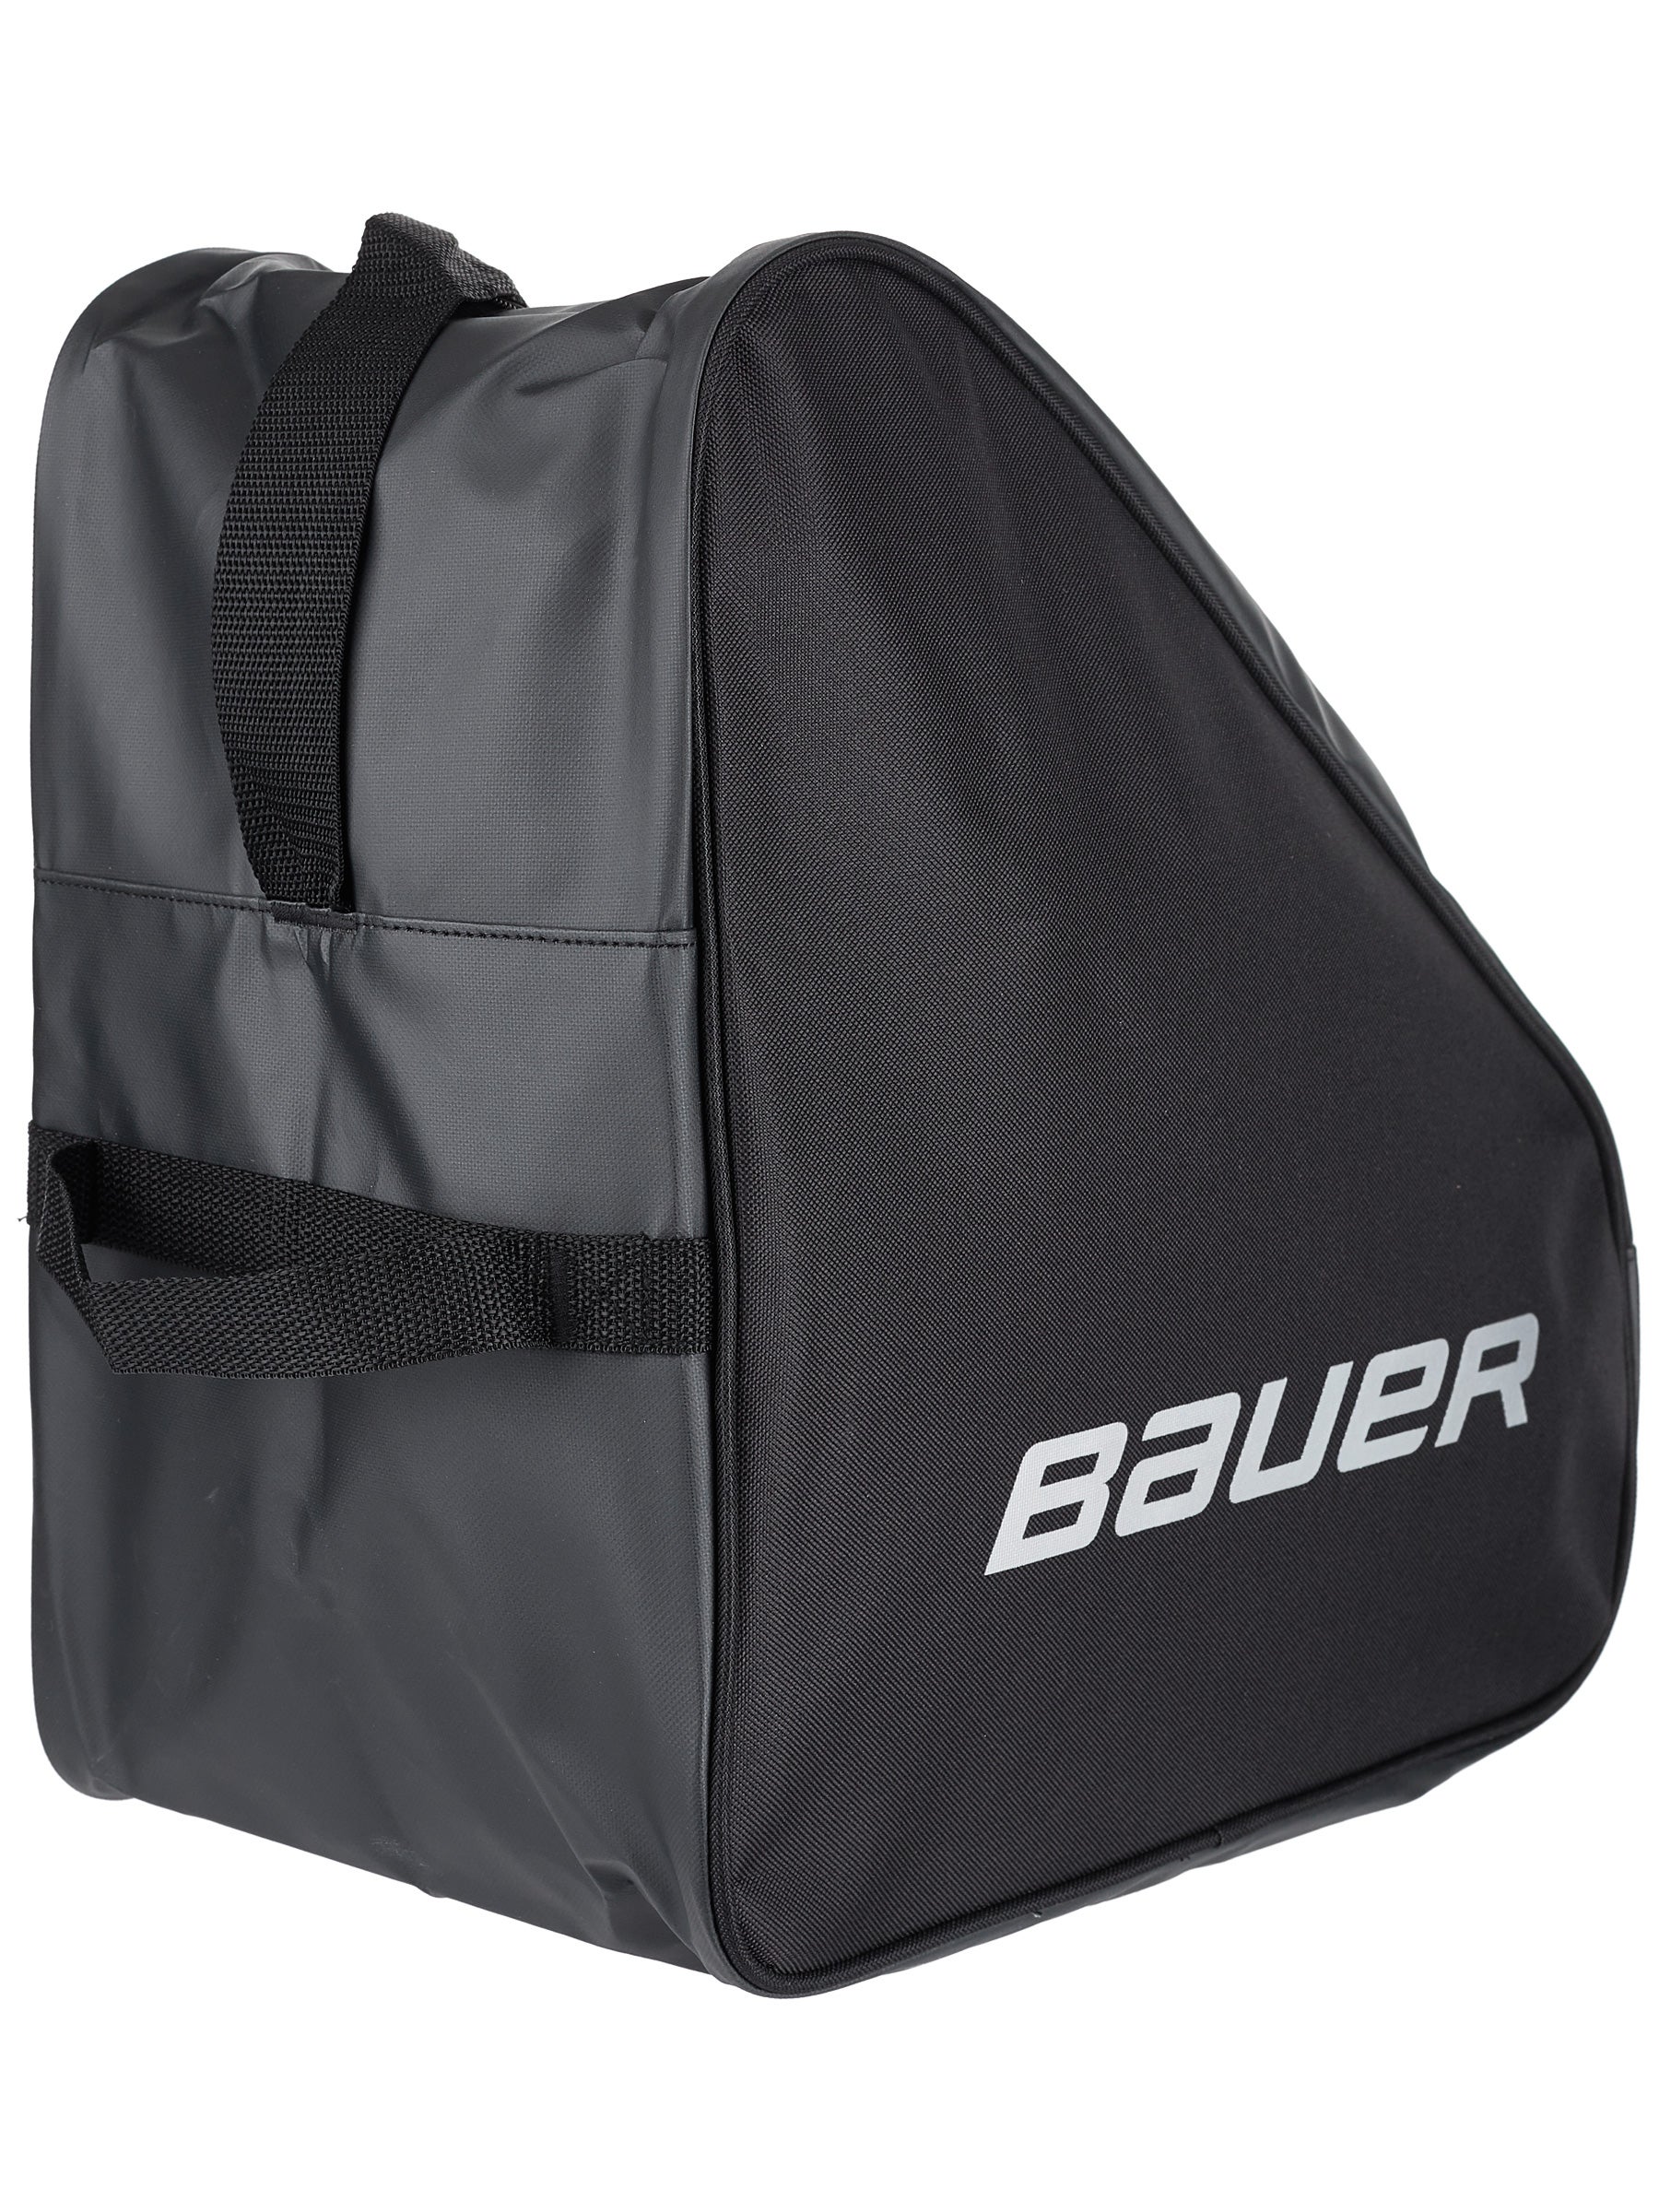 Bauer Ice/Roller Skate bag Black or Pink One size 